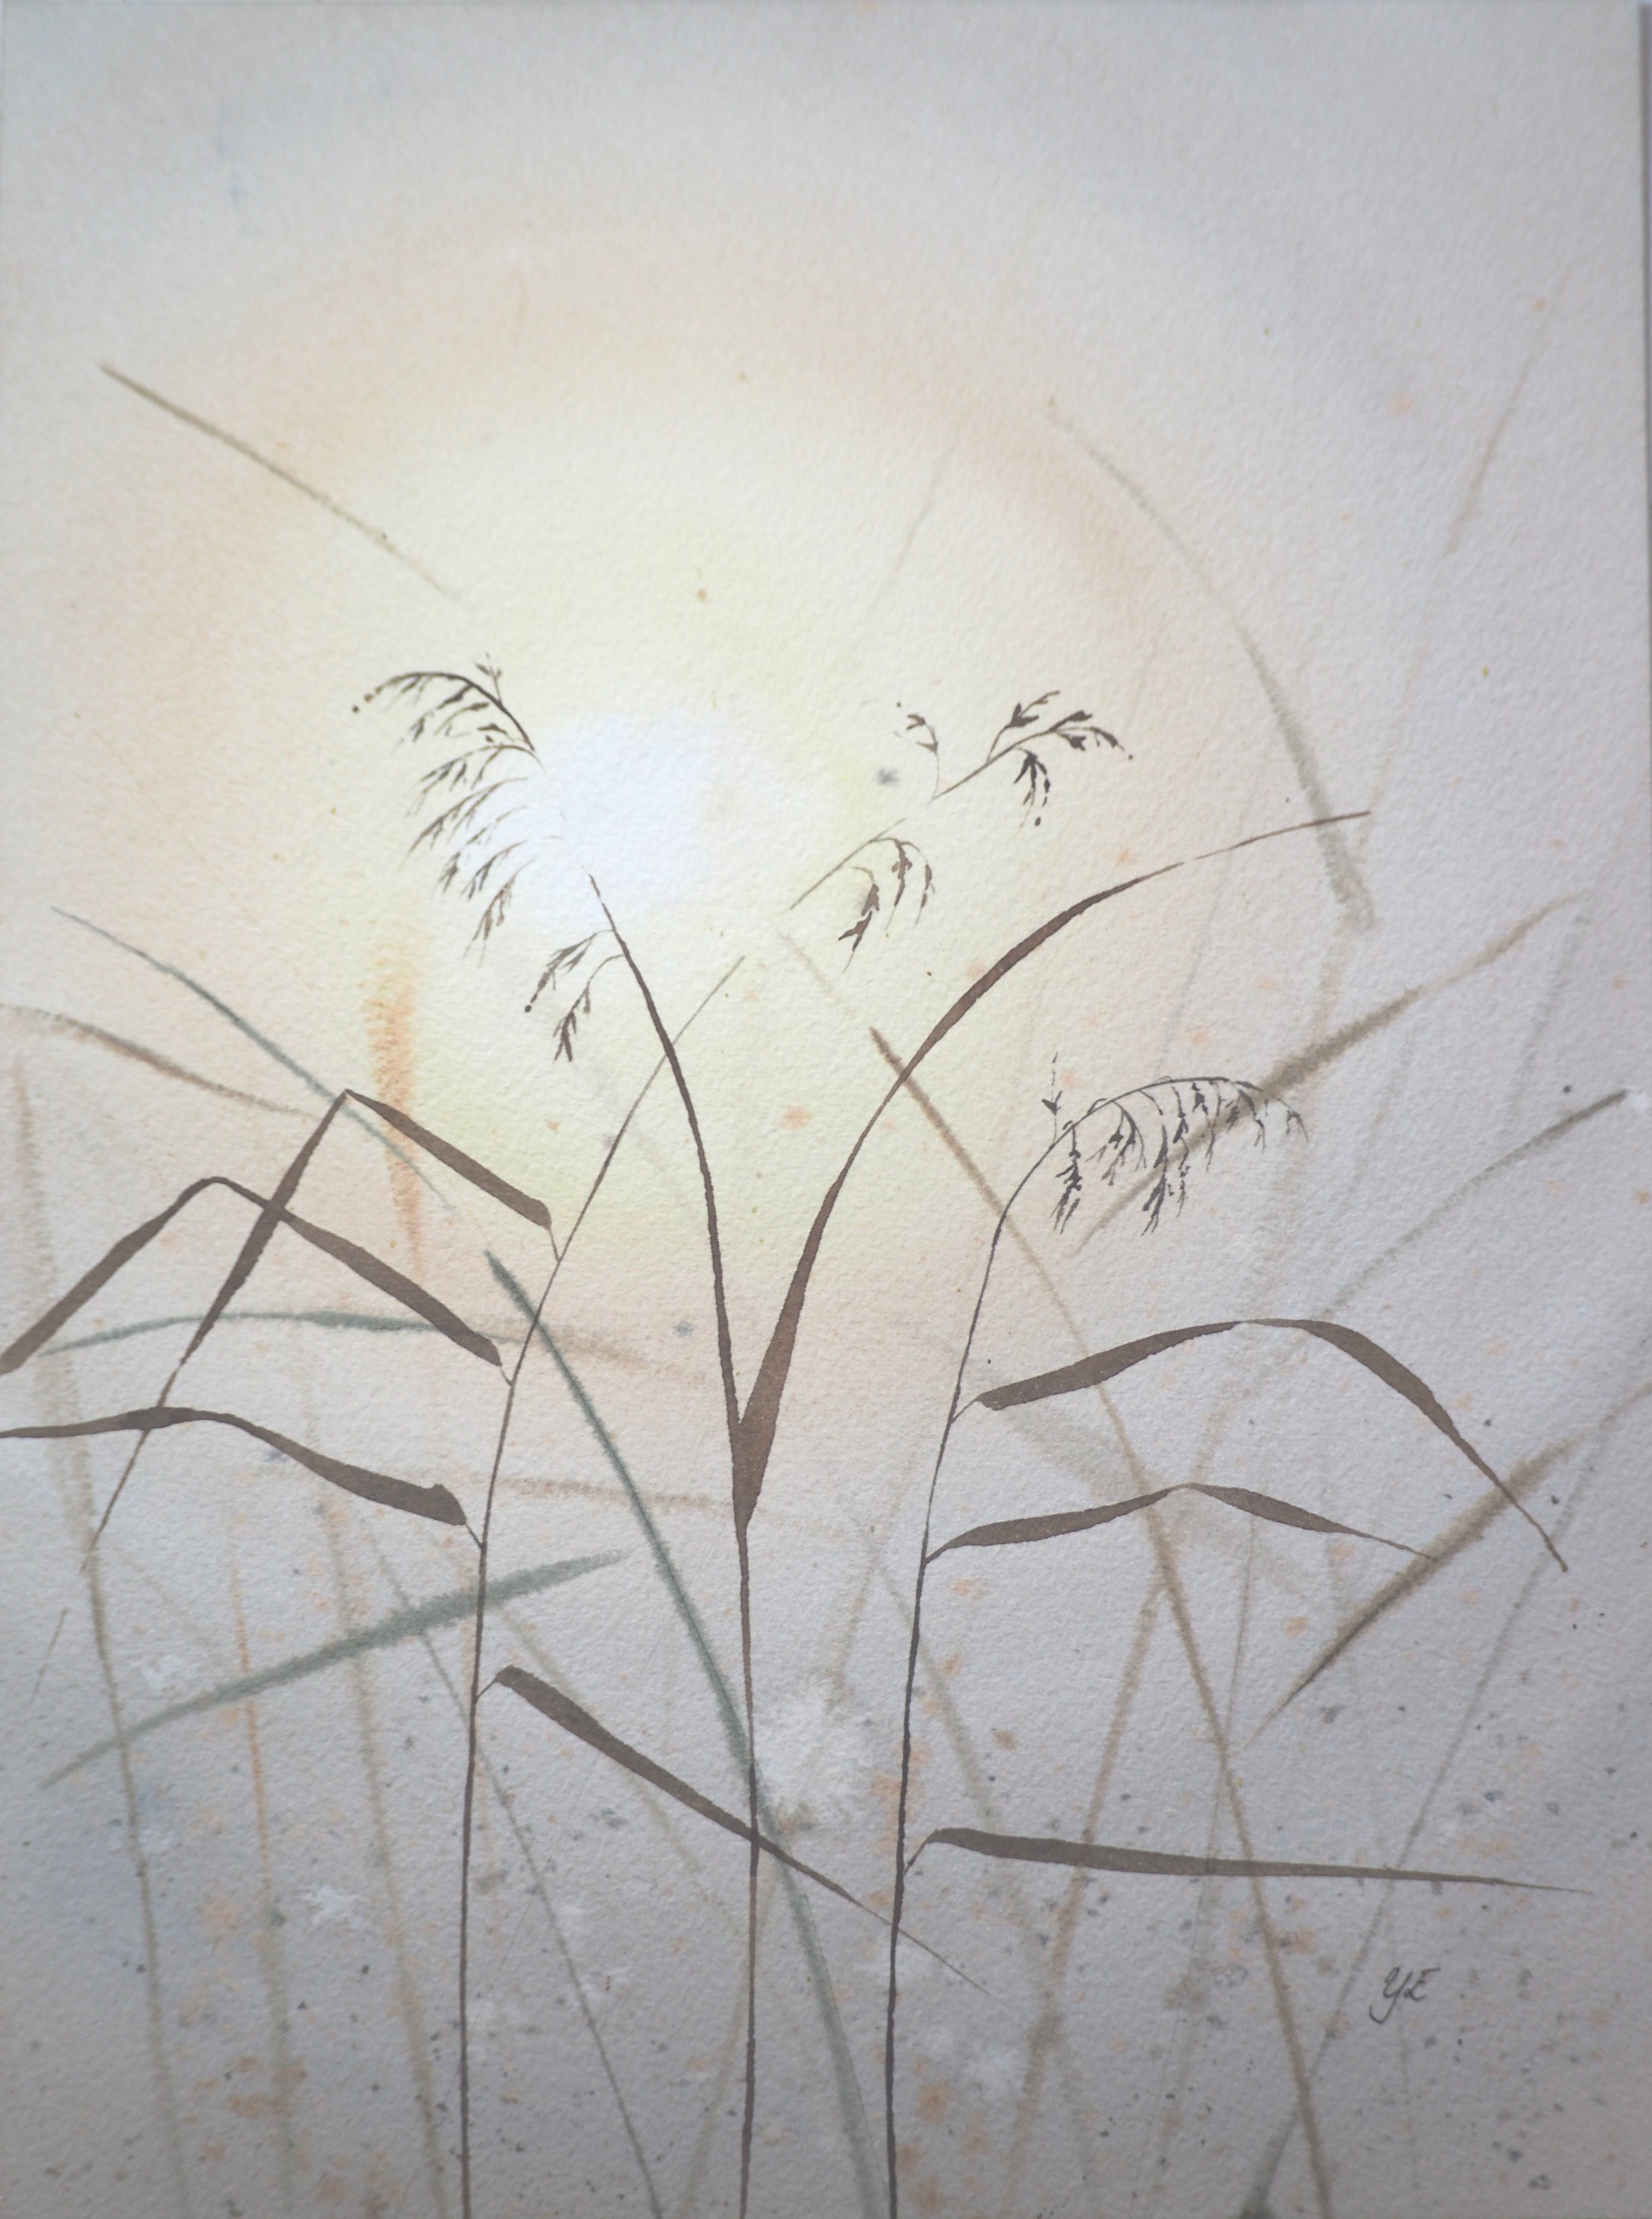 Strå i morgonljus - Orginalmålning i akvarell